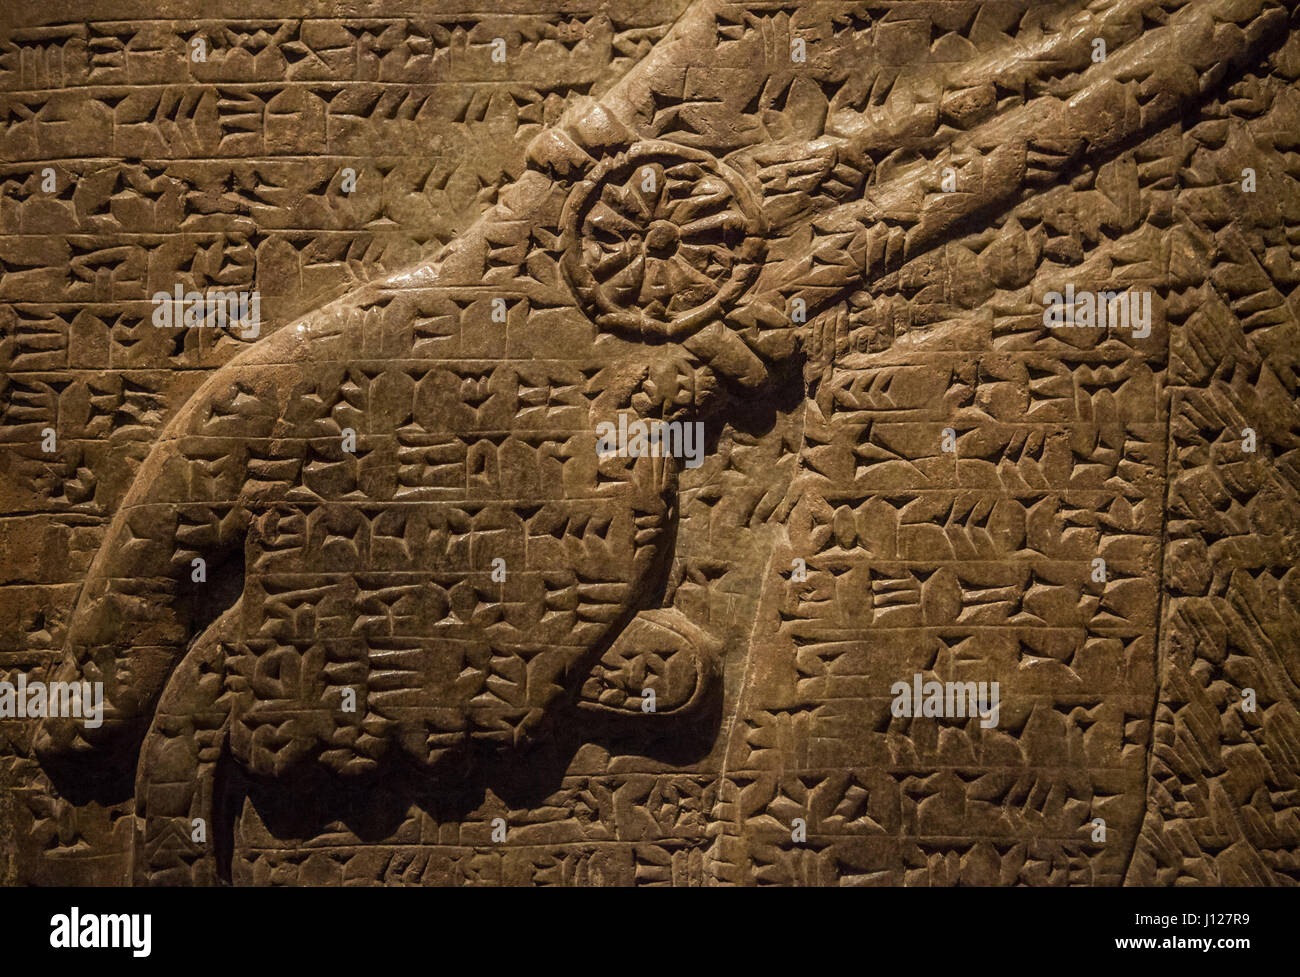 Antica parete assira carving con cunieform script. Il British Museum di Londra, Inghilterra. Foto Stock